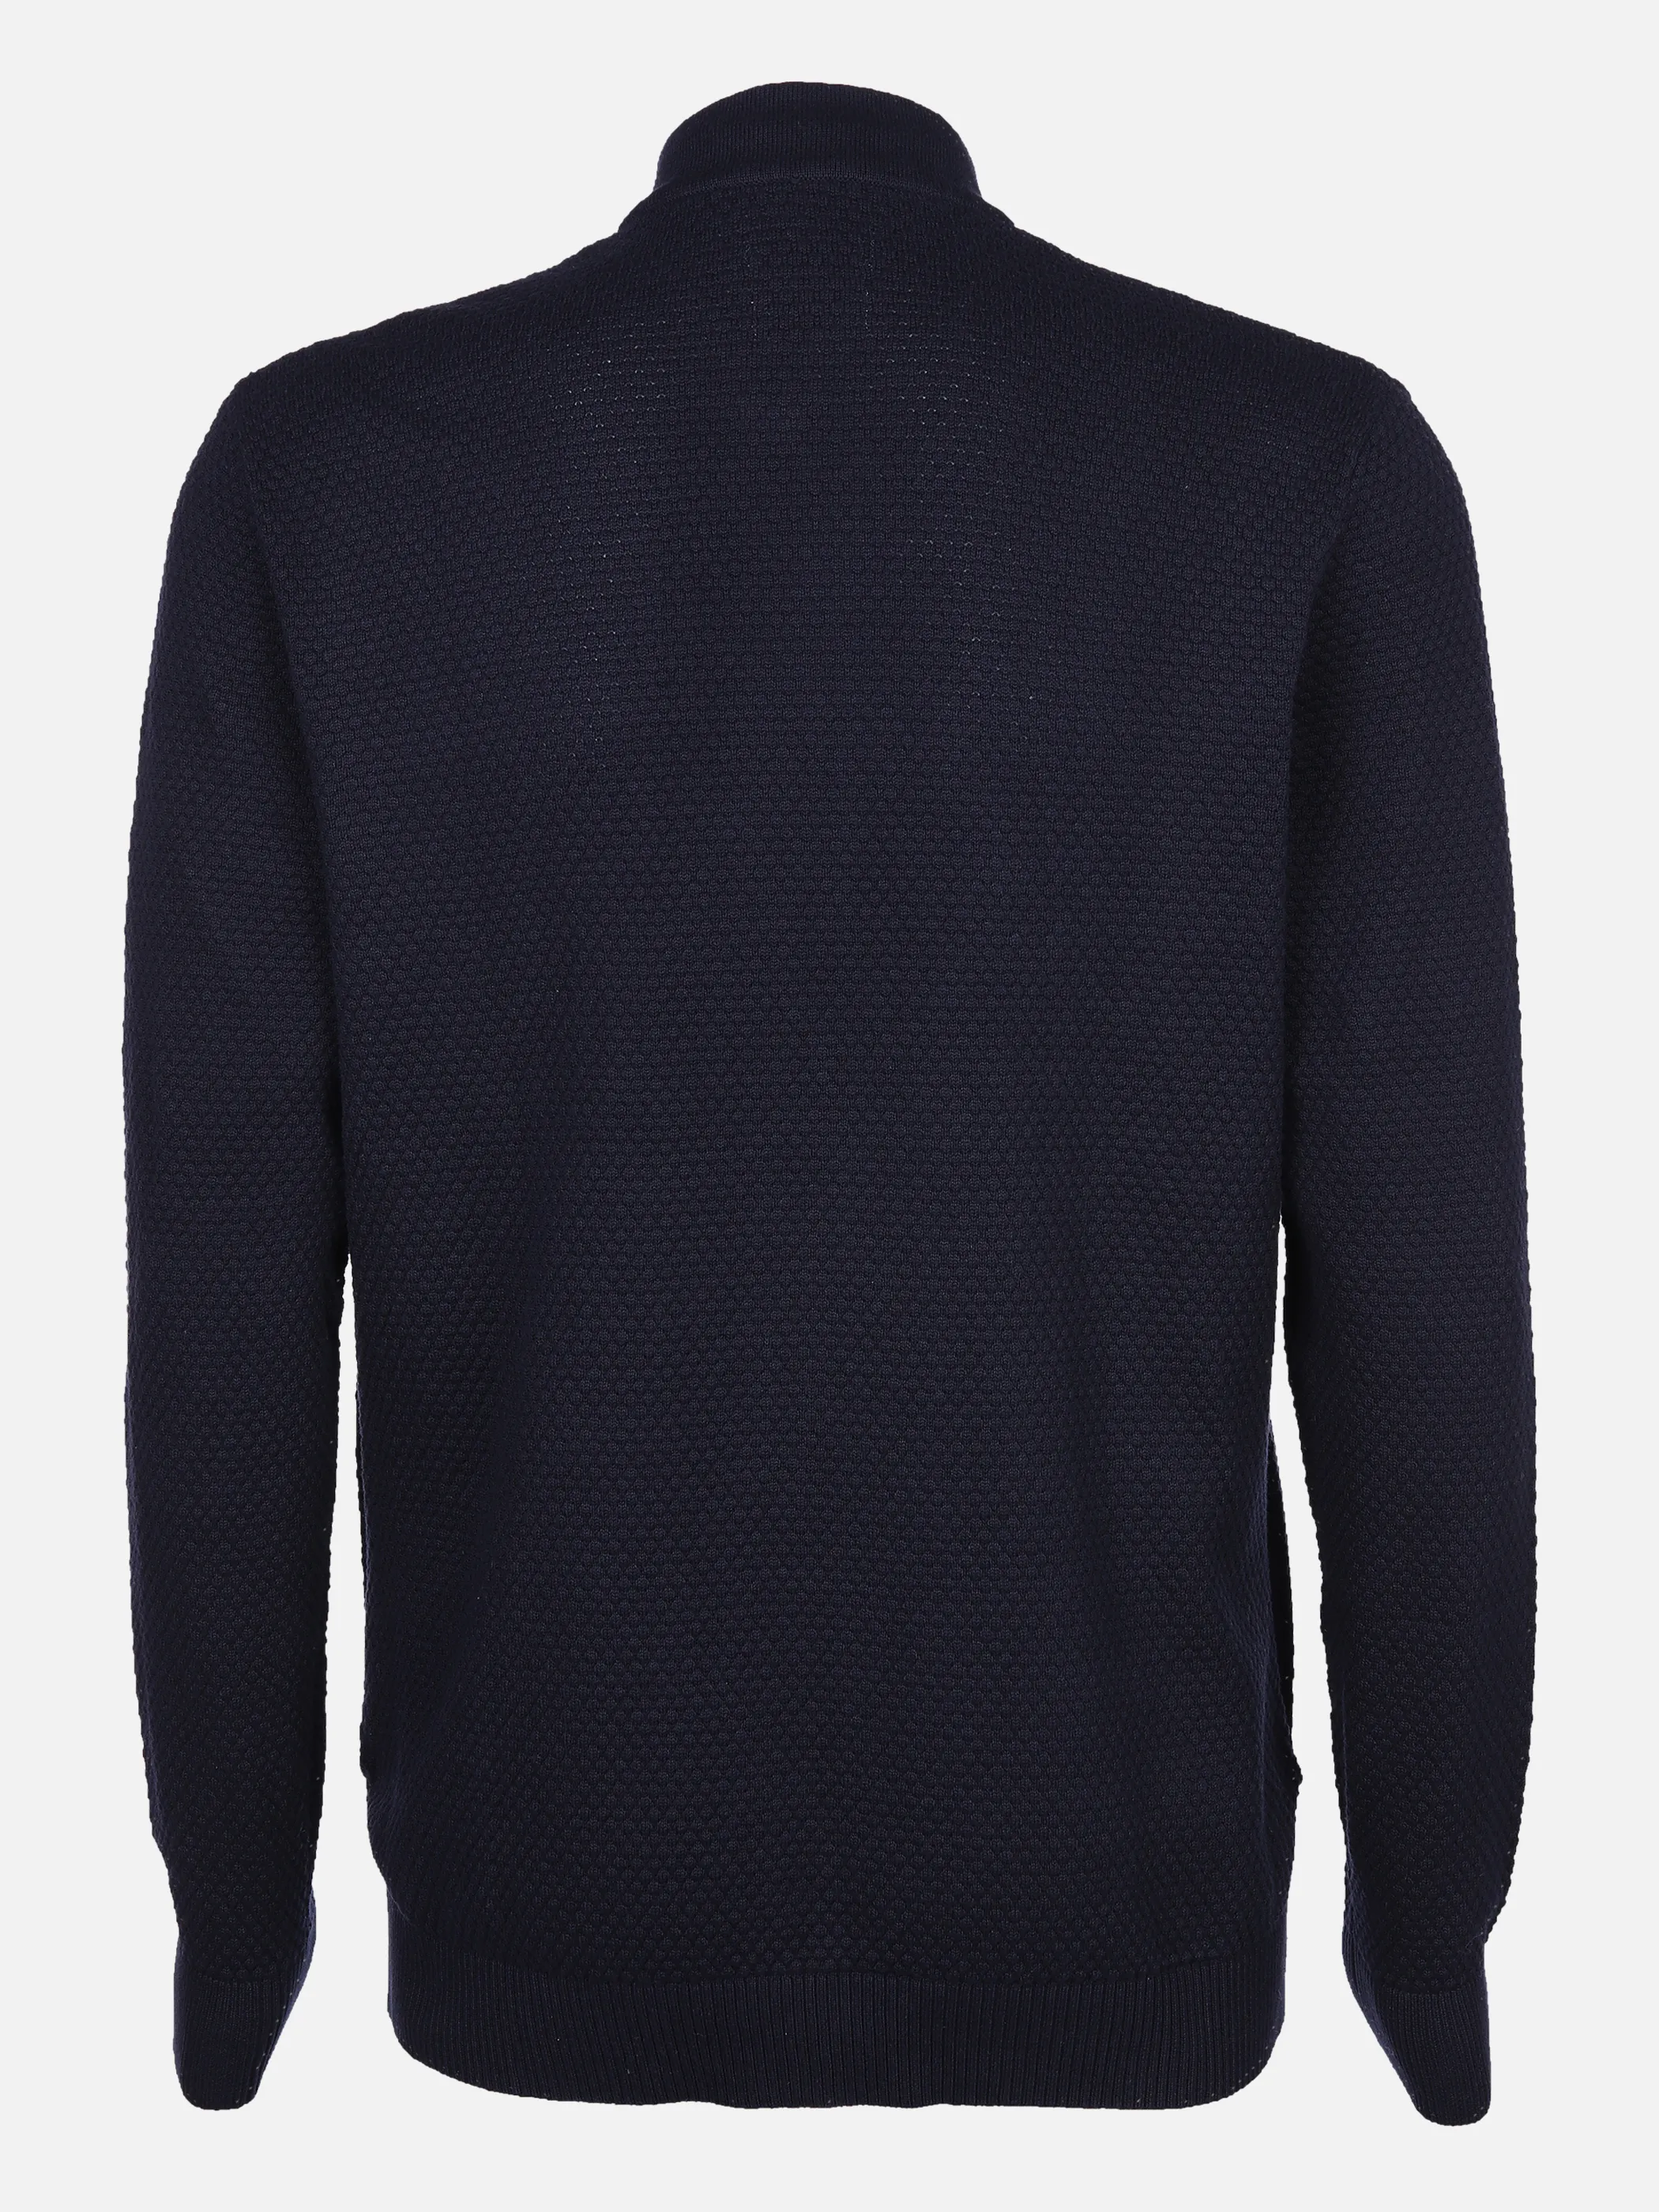 Tom Tailor 1032287 structured knit jacket Blau 869527 10668 2